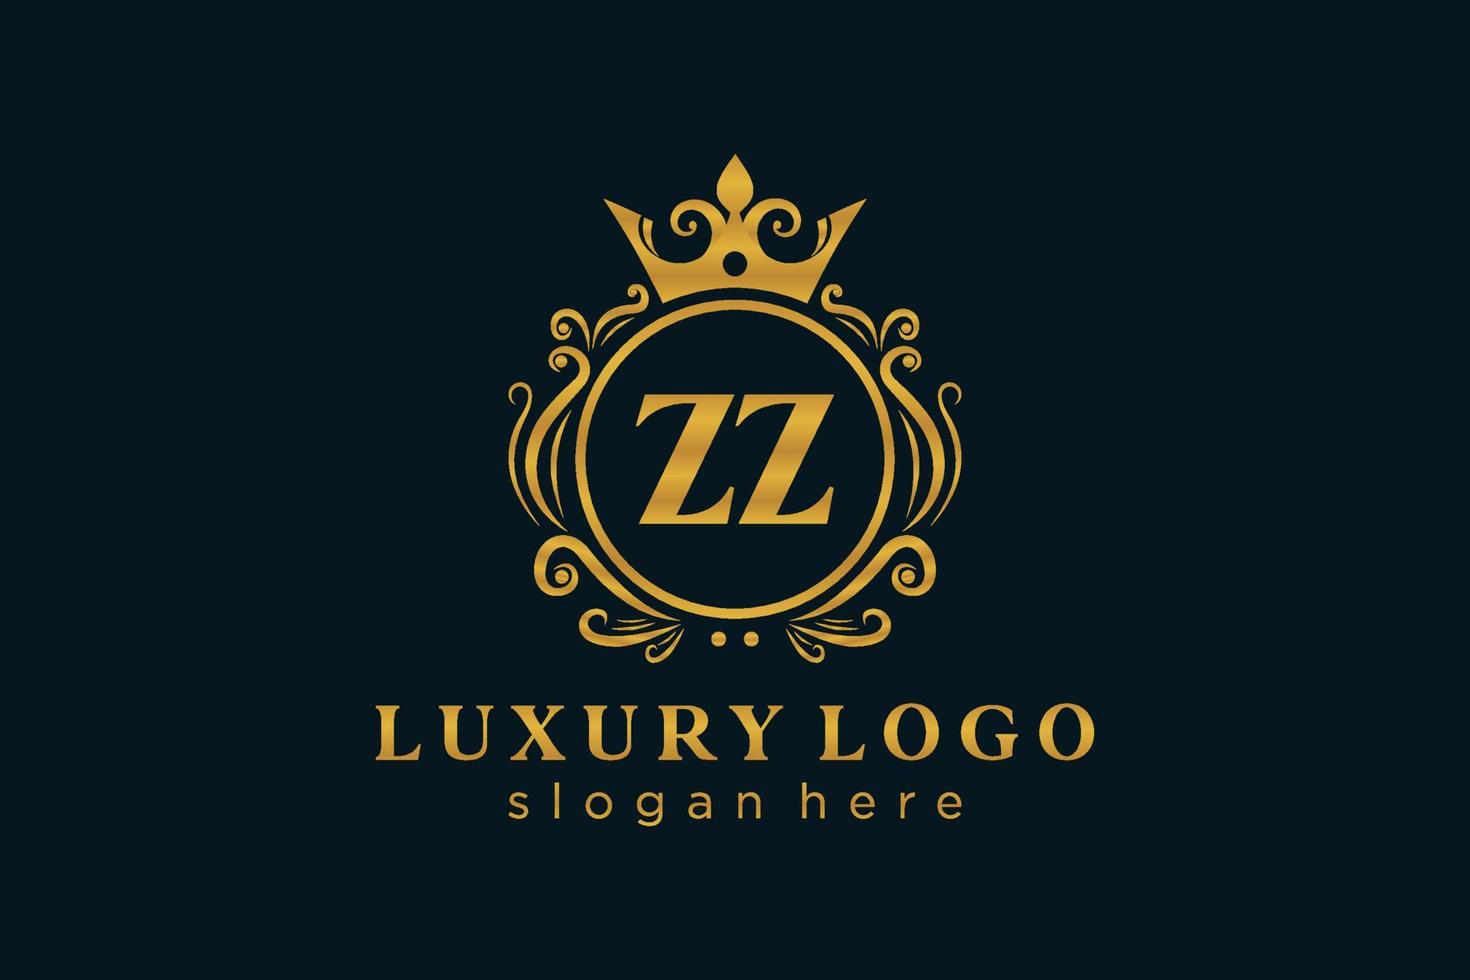 modèle initial de logo de luxe royal de lettre zz dans l'art vectoriel pour le restaurant, la royauté, la boutique, le café, l'hôtel, l'héraldique, les bijoux, la mode et d'autres illustrations vectorielles.